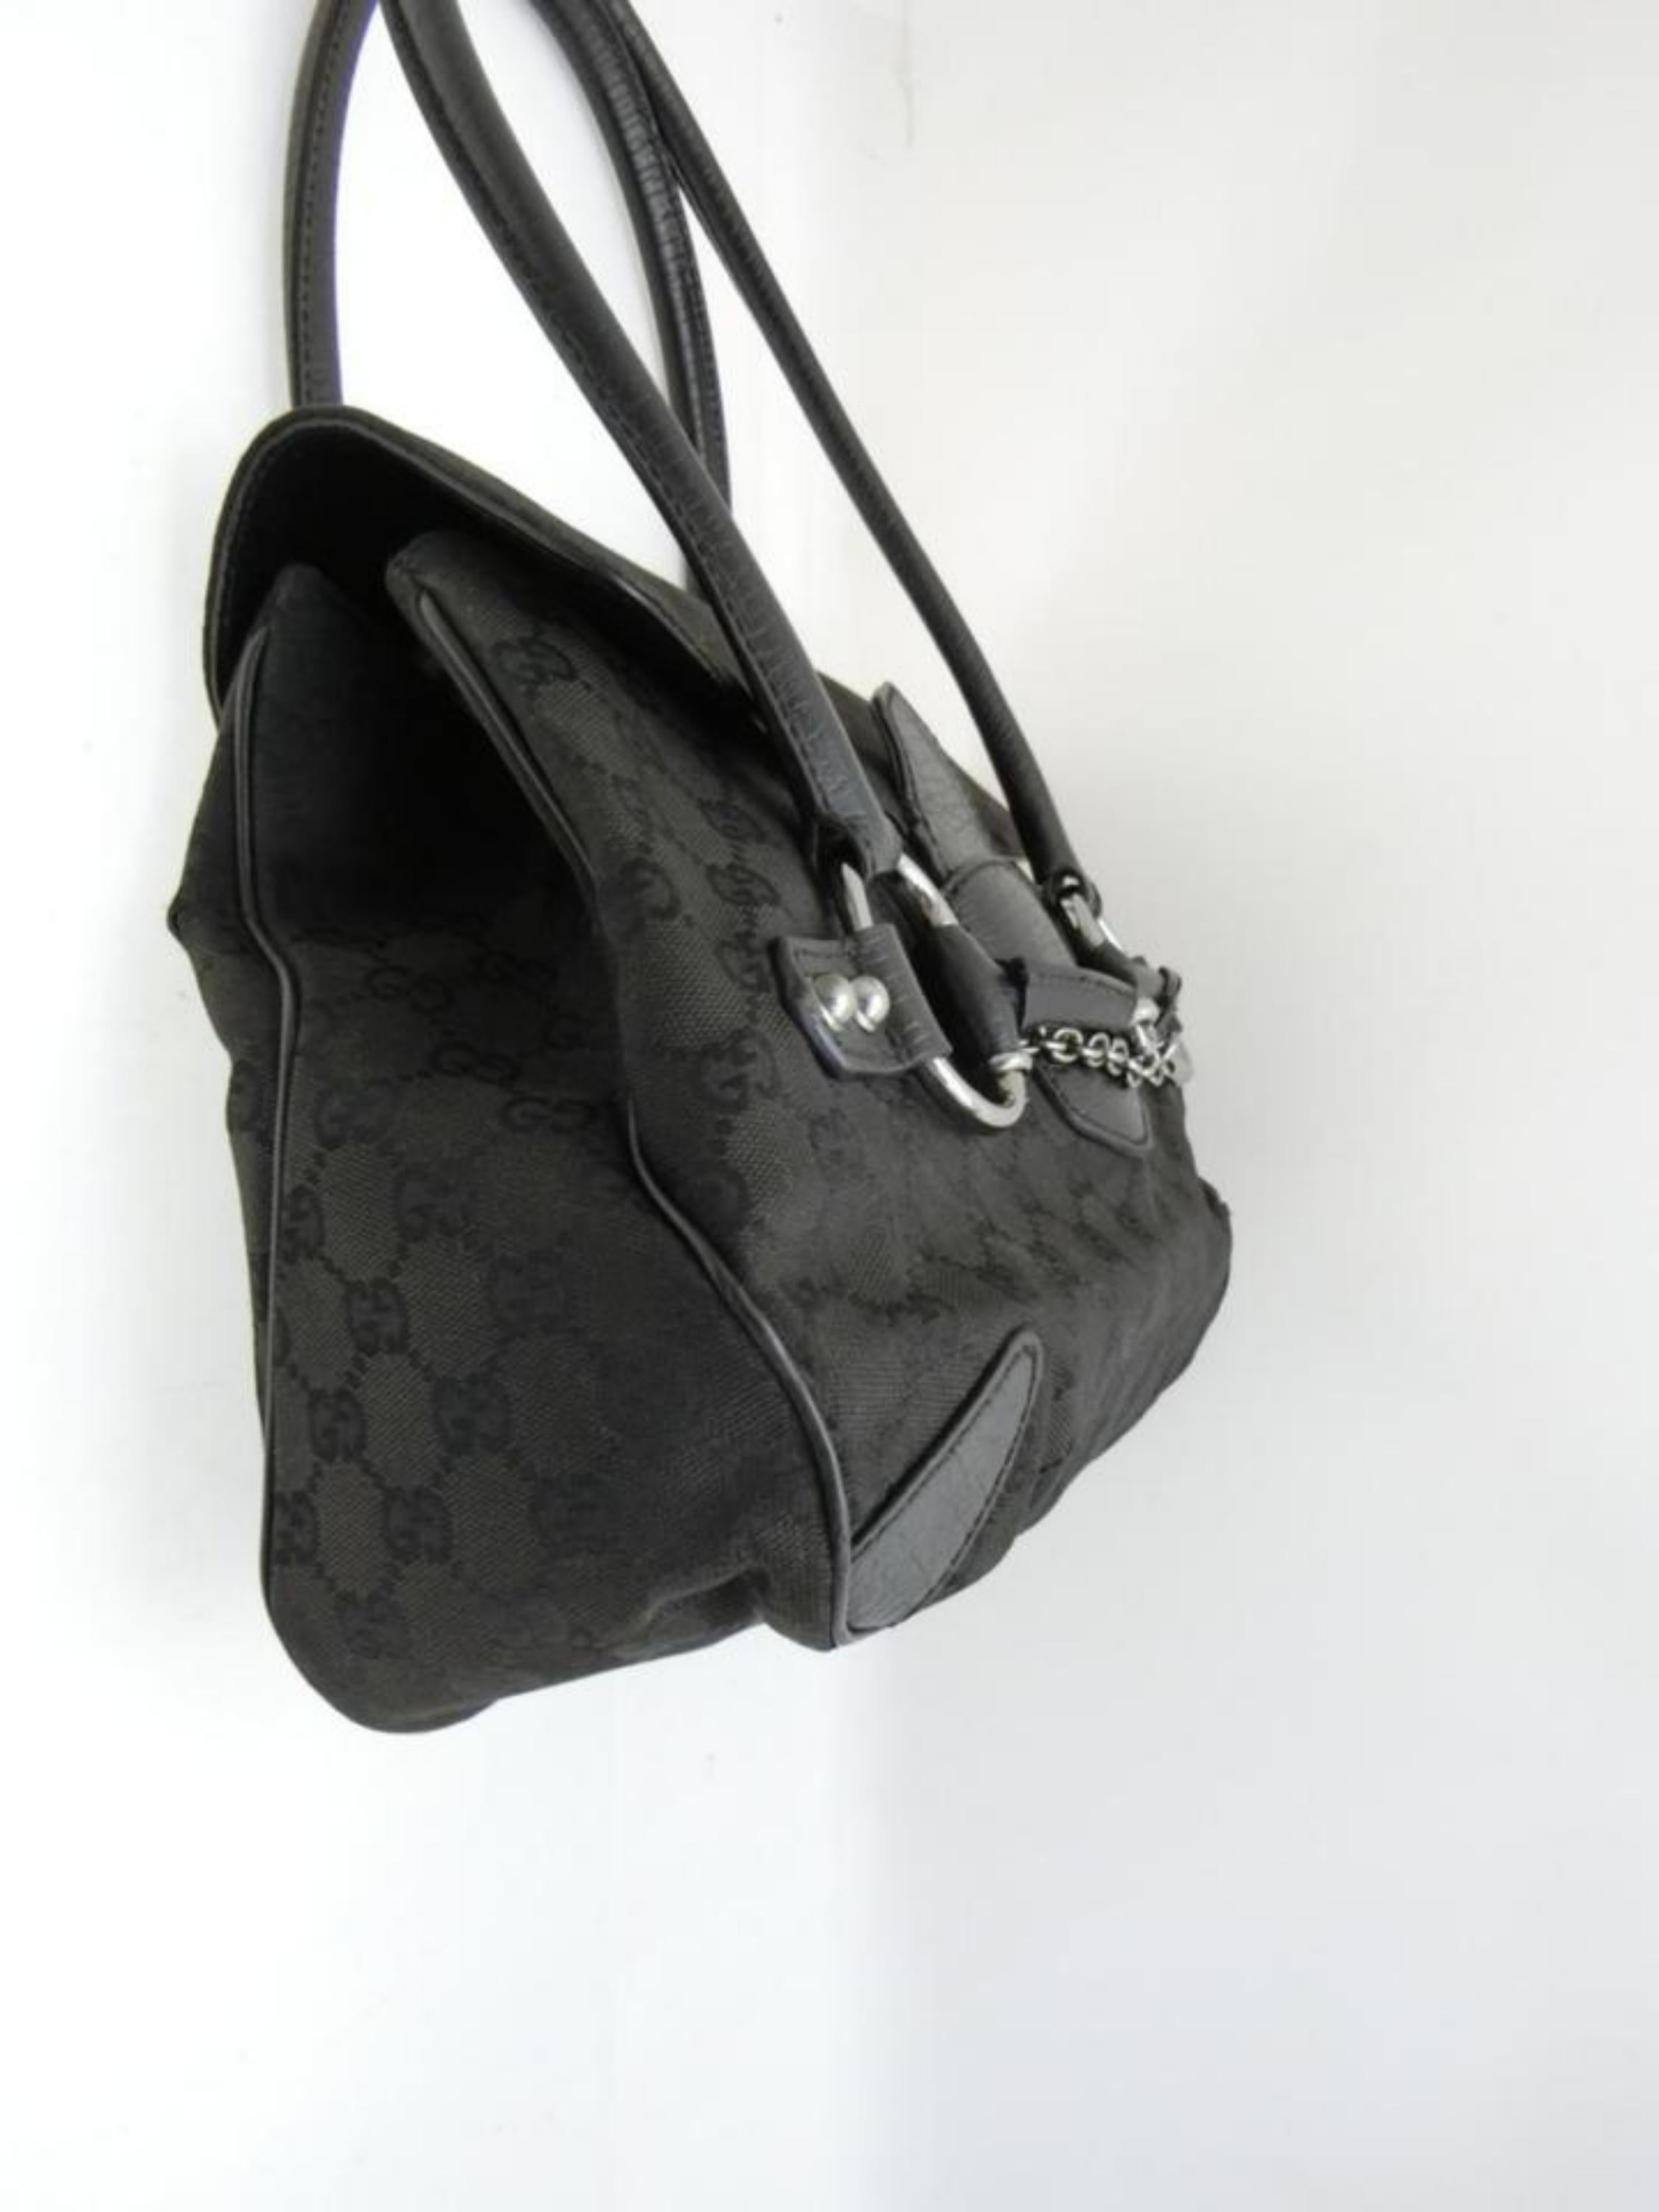 Gucci Horsebit Monogram Chain Satchel 231789 Black Canvas Shoulder Bag For Sale 3